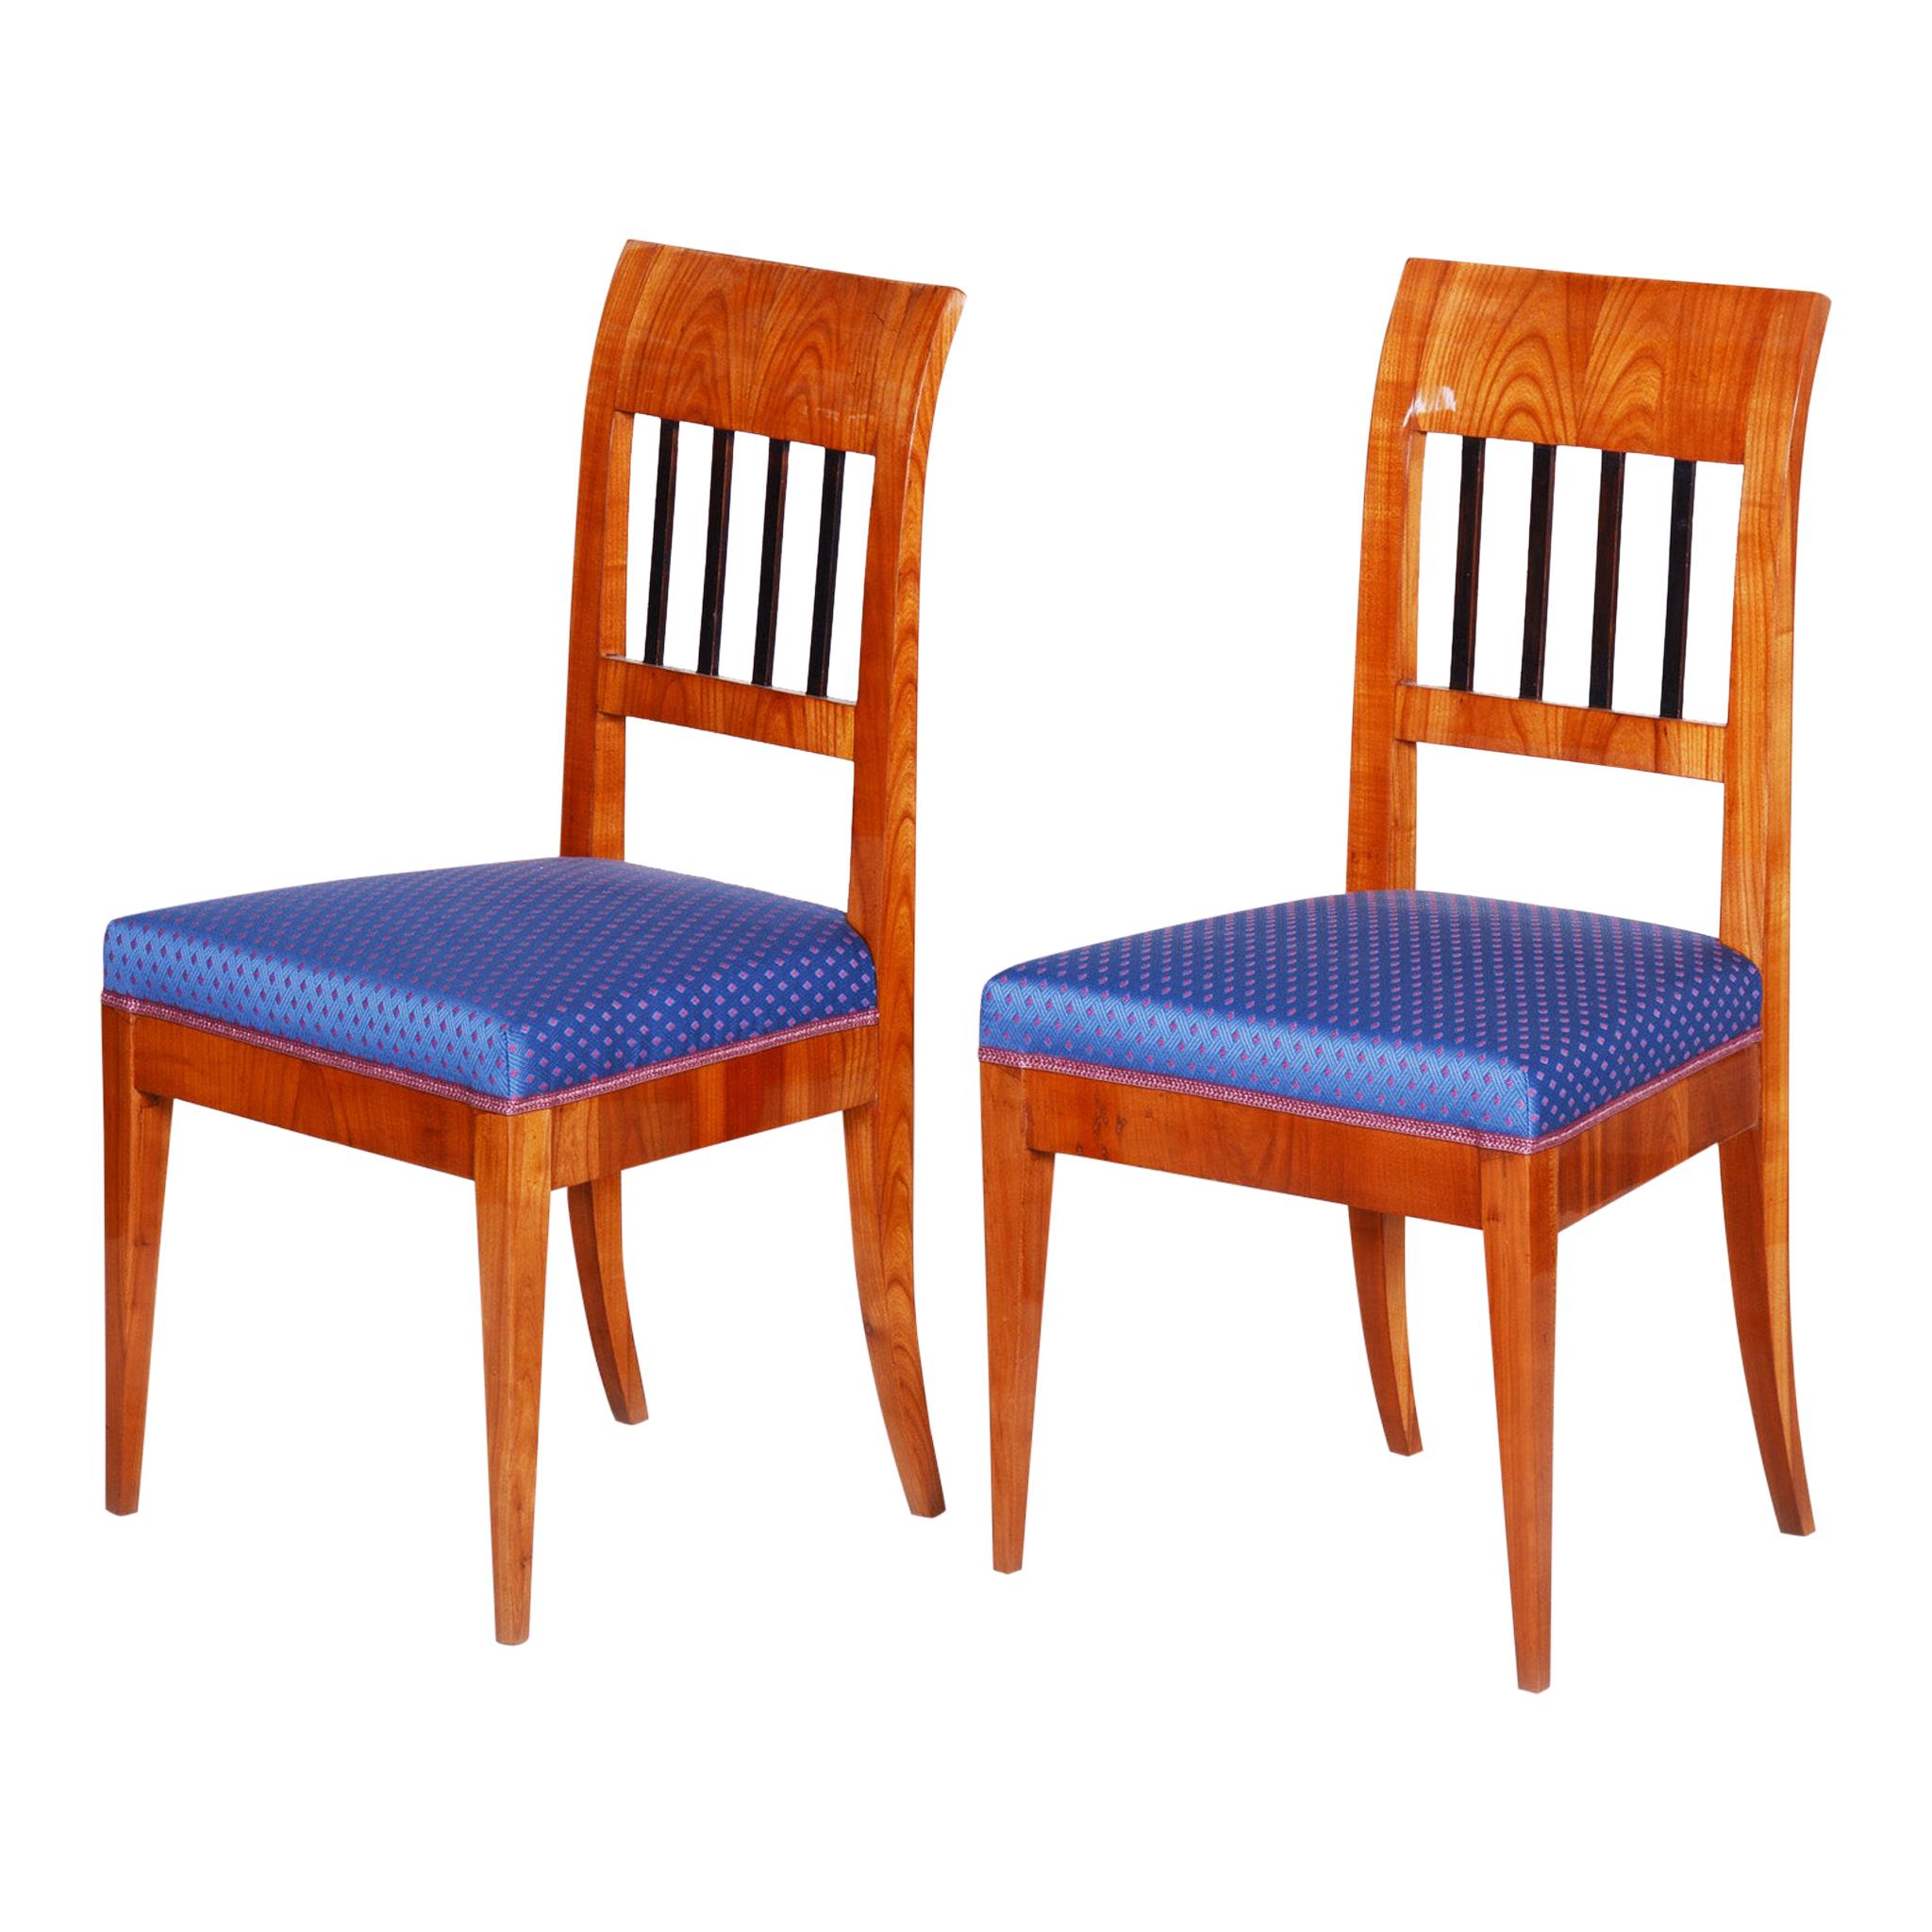 Paire de chaises Biedermeier tchèques du début du 19e siècle, Tchécoslovaquie, Cerisier, années 1820